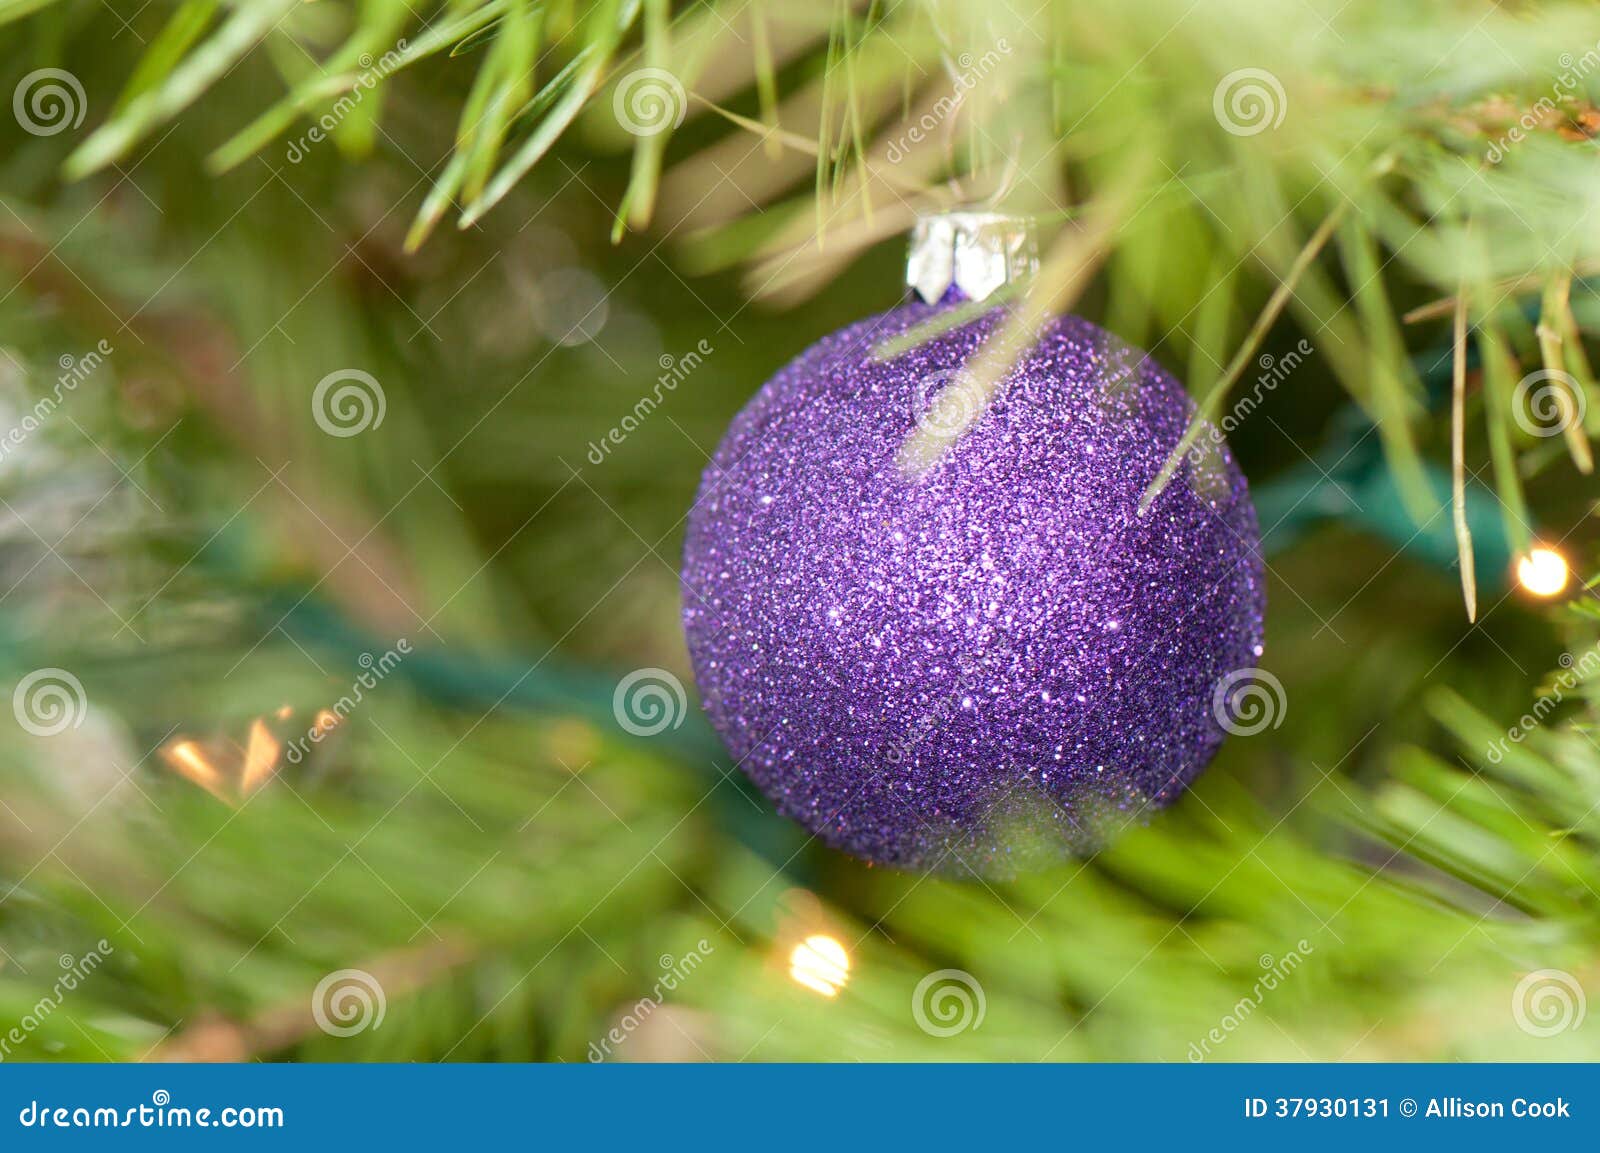 Dark Purple Christmas Ornament Stock Image - Image of xmas, ball: 37930131